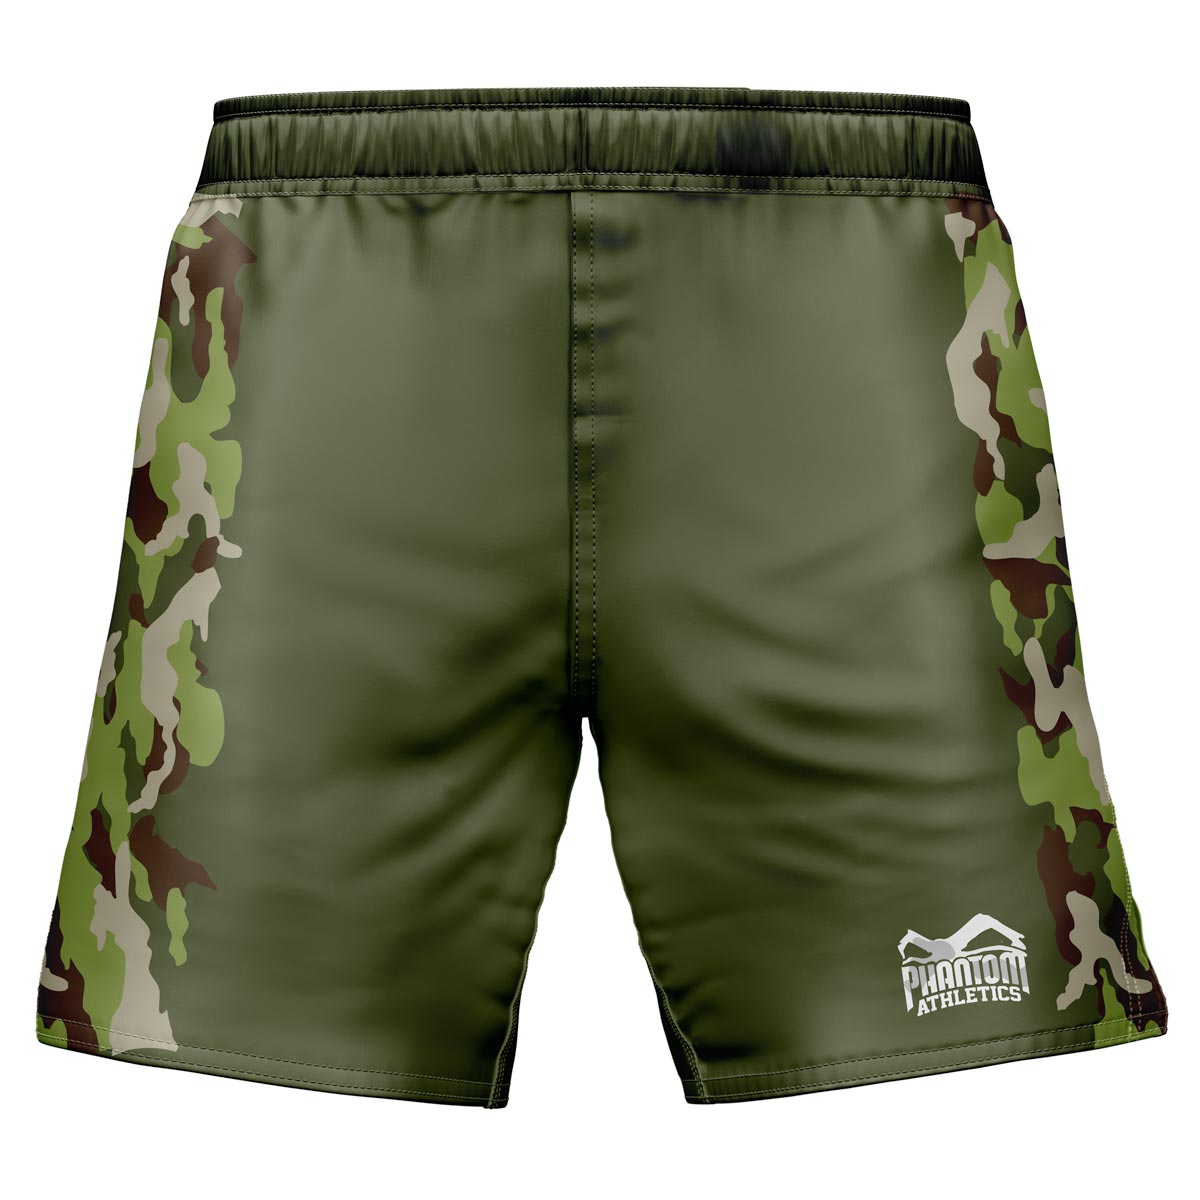 Phantom EVO MMA borbene kratke hlače. U ratnom dizajnu sa zelenim maskirnim elementima.